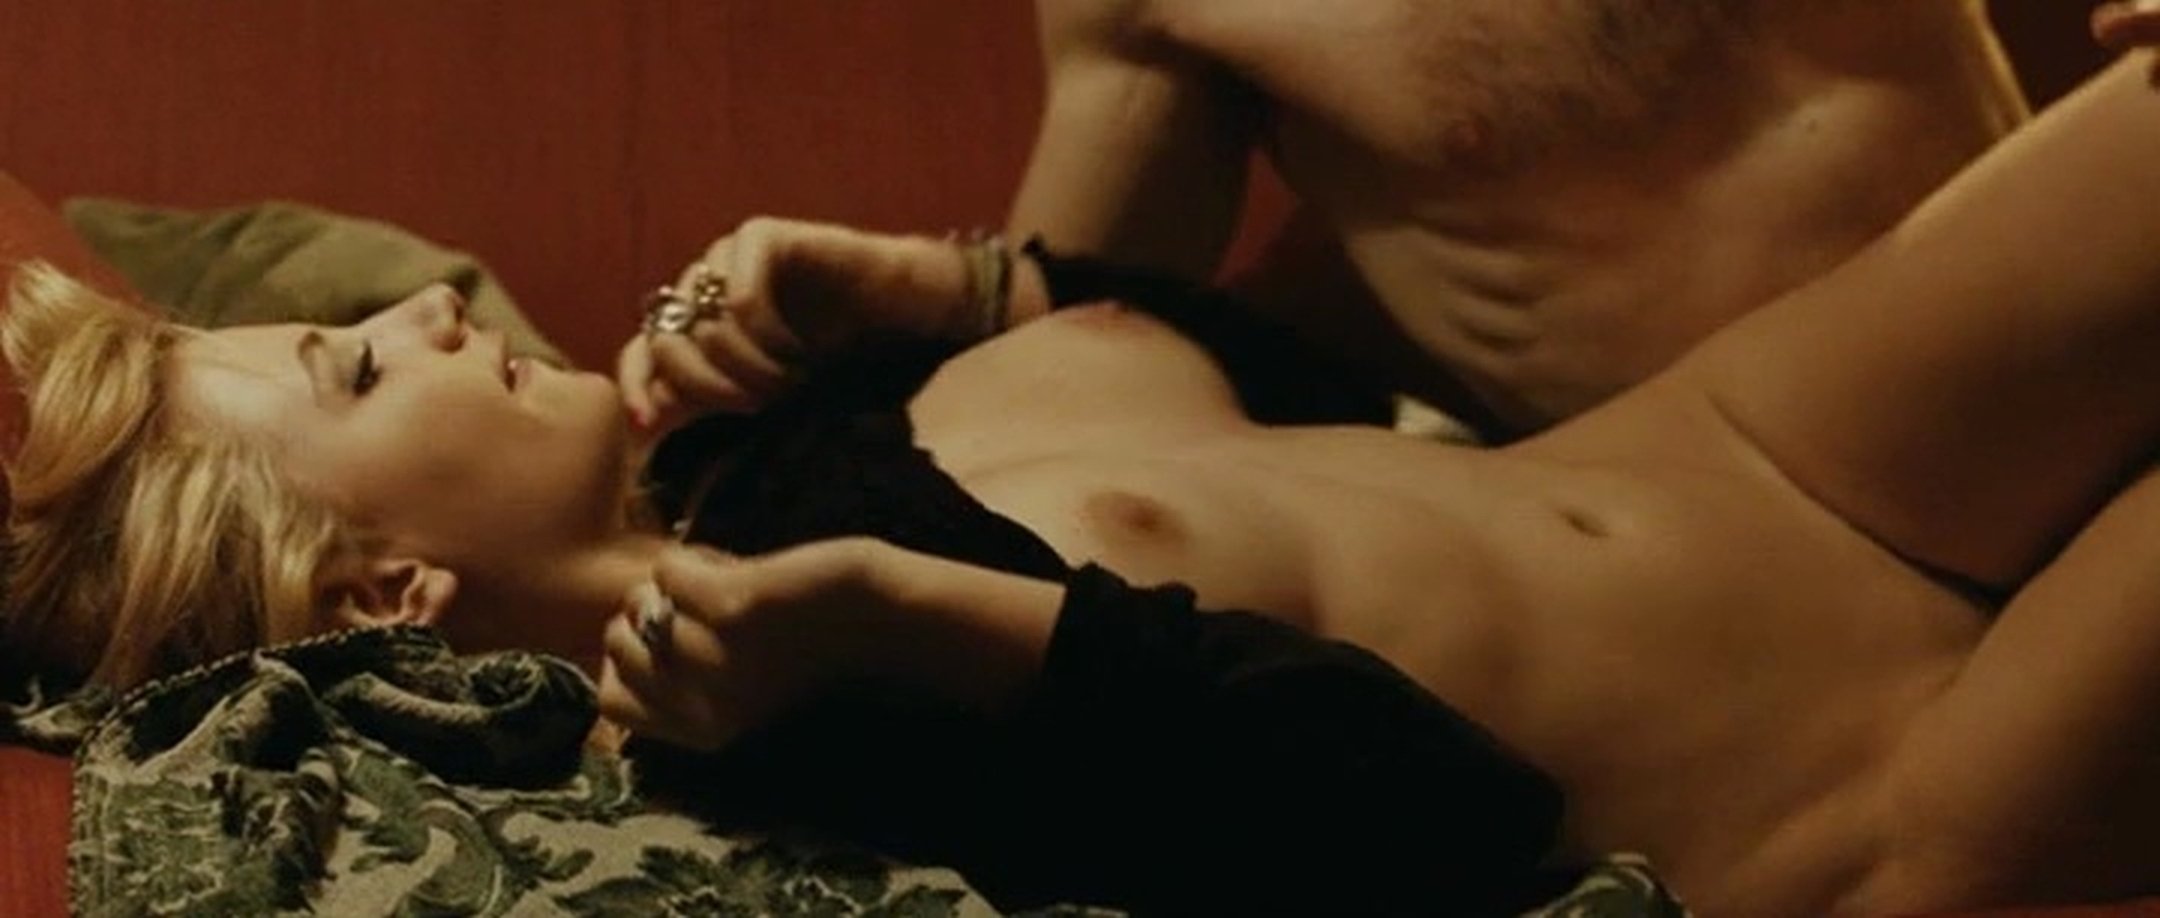 Miriam Giovanelli nude pics.